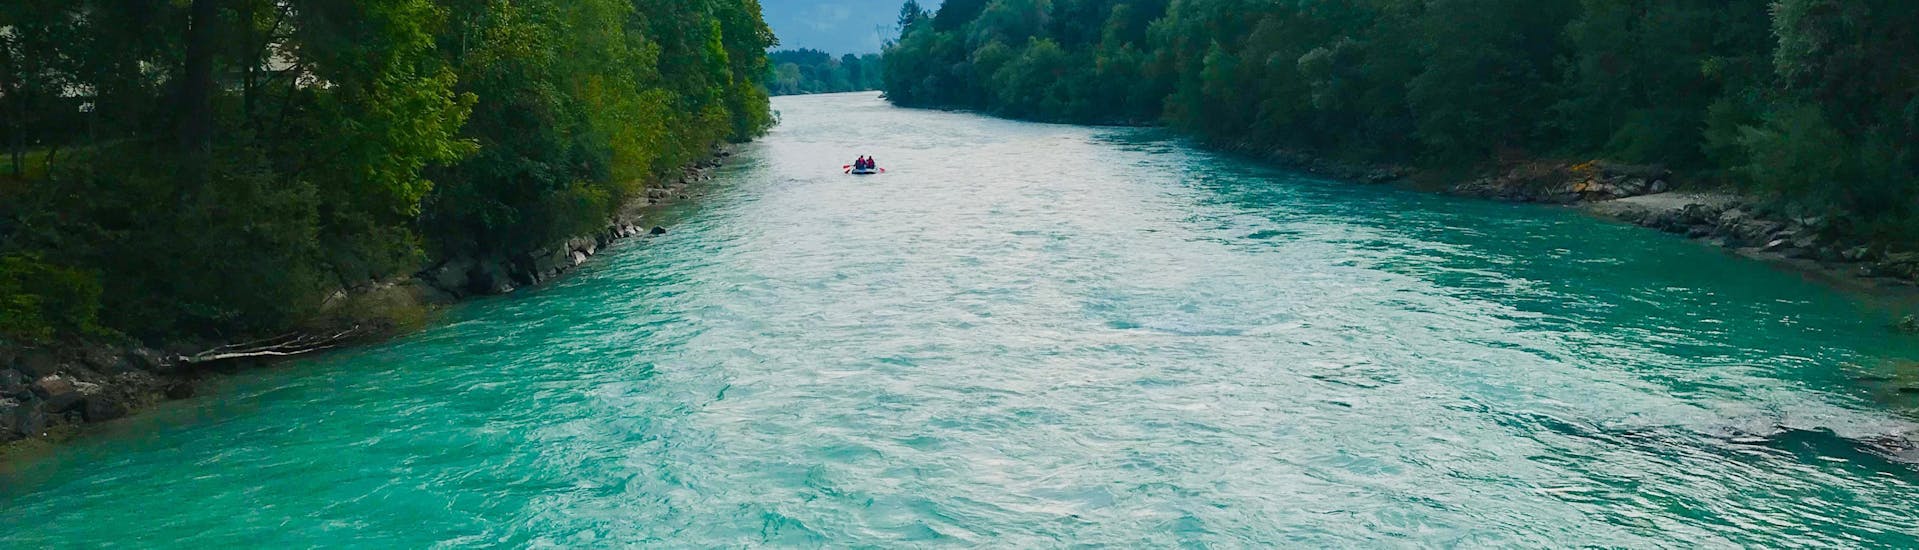 Rafting fácil en Dellach im Drautal - Río Drava.